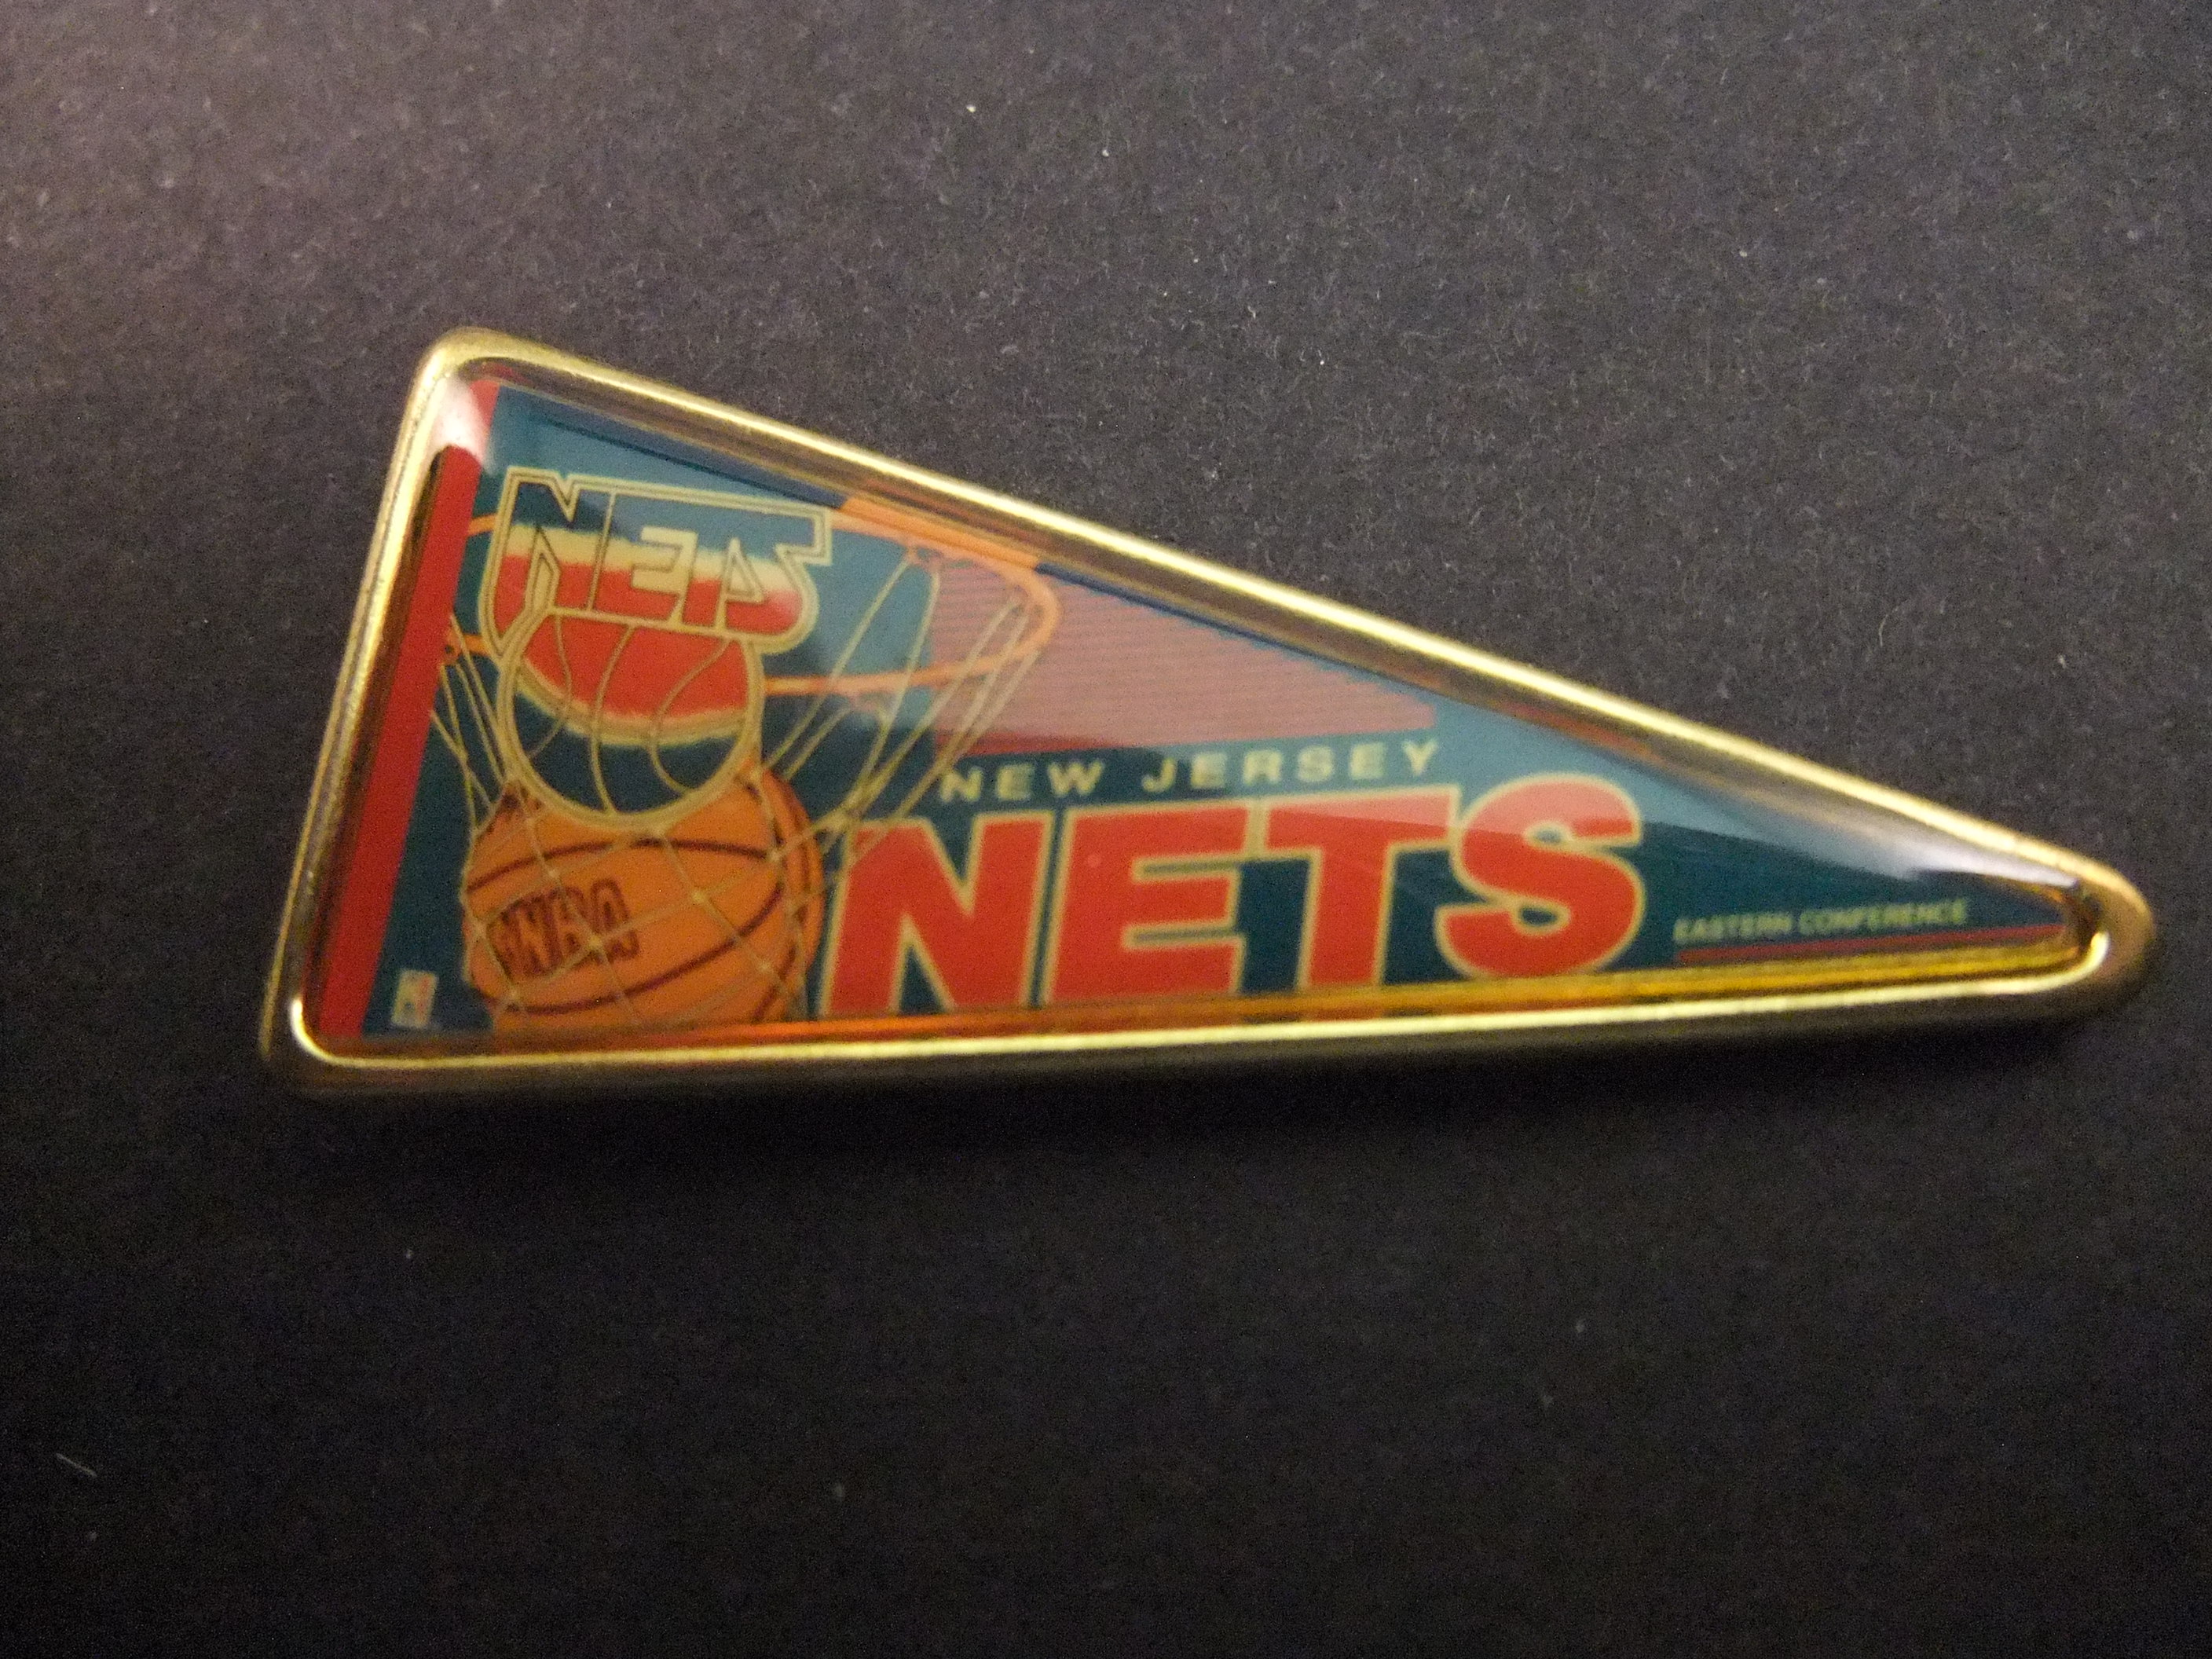 New Jersey, Nets basketbalteam NBA